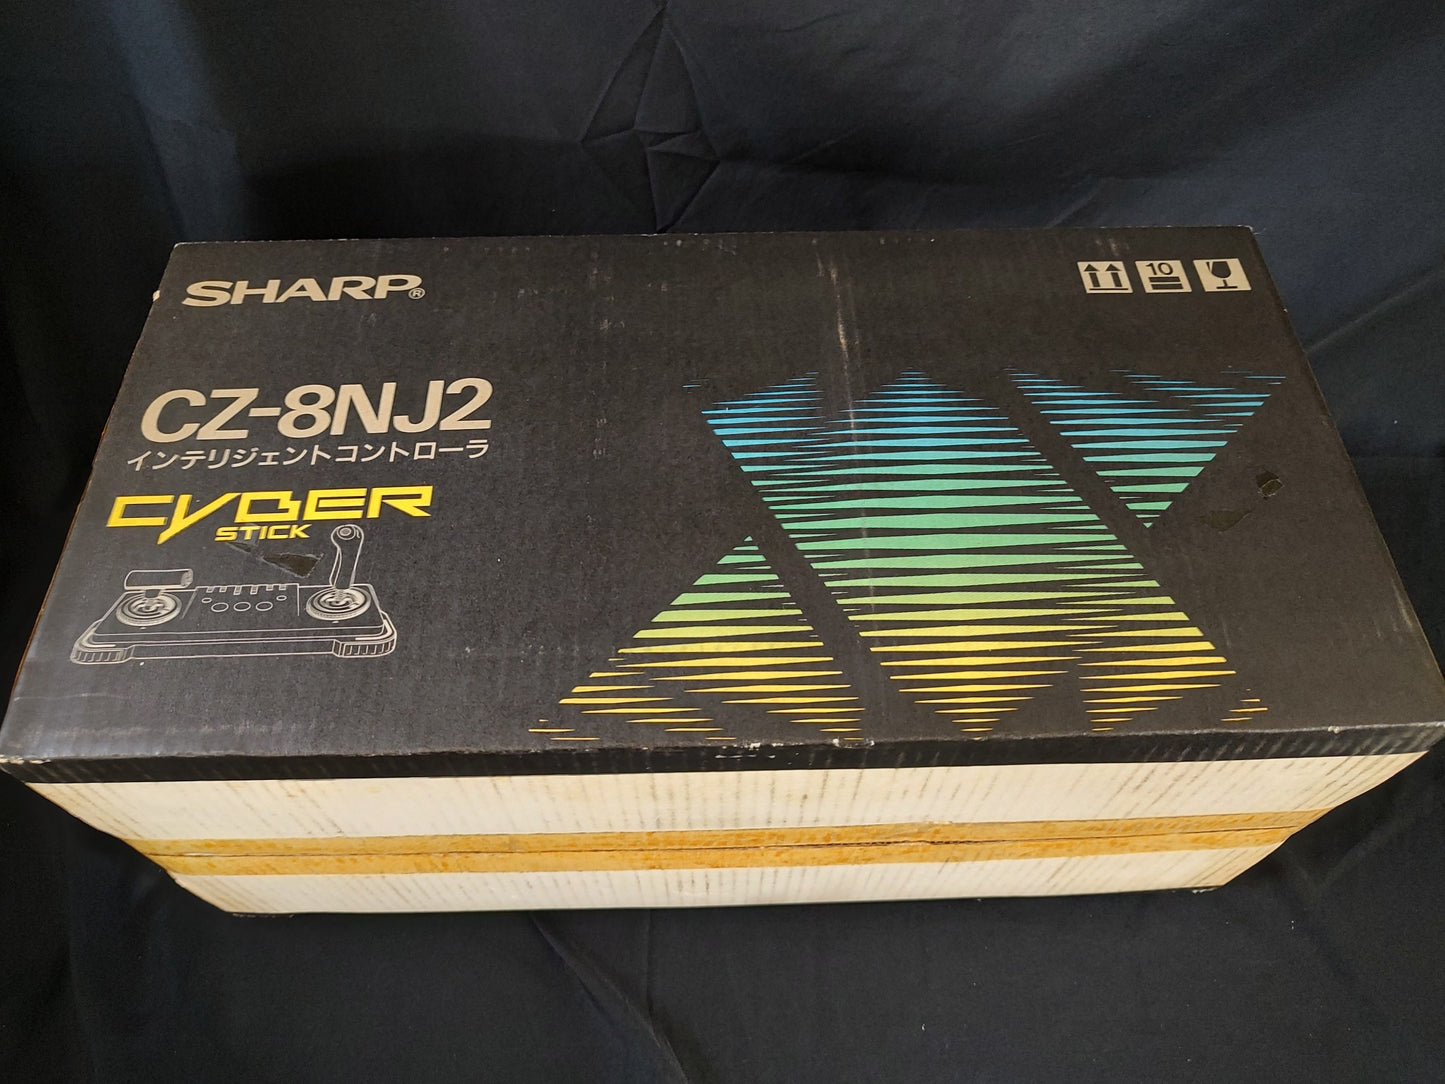 SHARP X68000 Cyber Stick Intelligent Controller CZ-8NJ2, w/Box, Working-f1214-